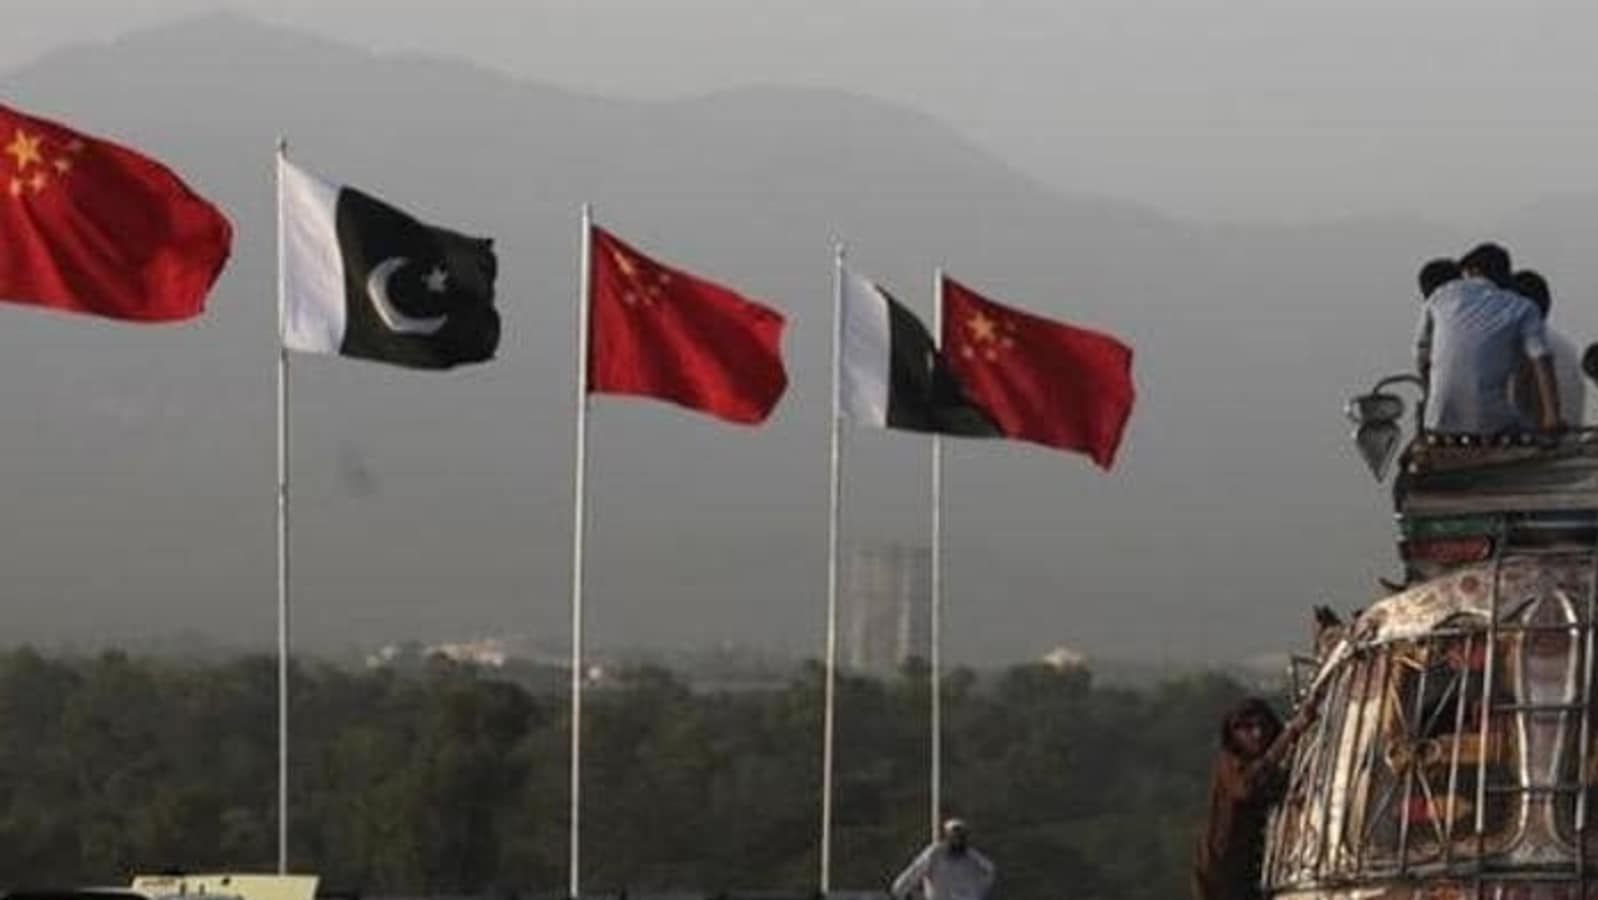 Le banche cinesi daranno al Pakistan 2,3 miliardi di dollari “entro pochi giorni” per aiutare l’economia